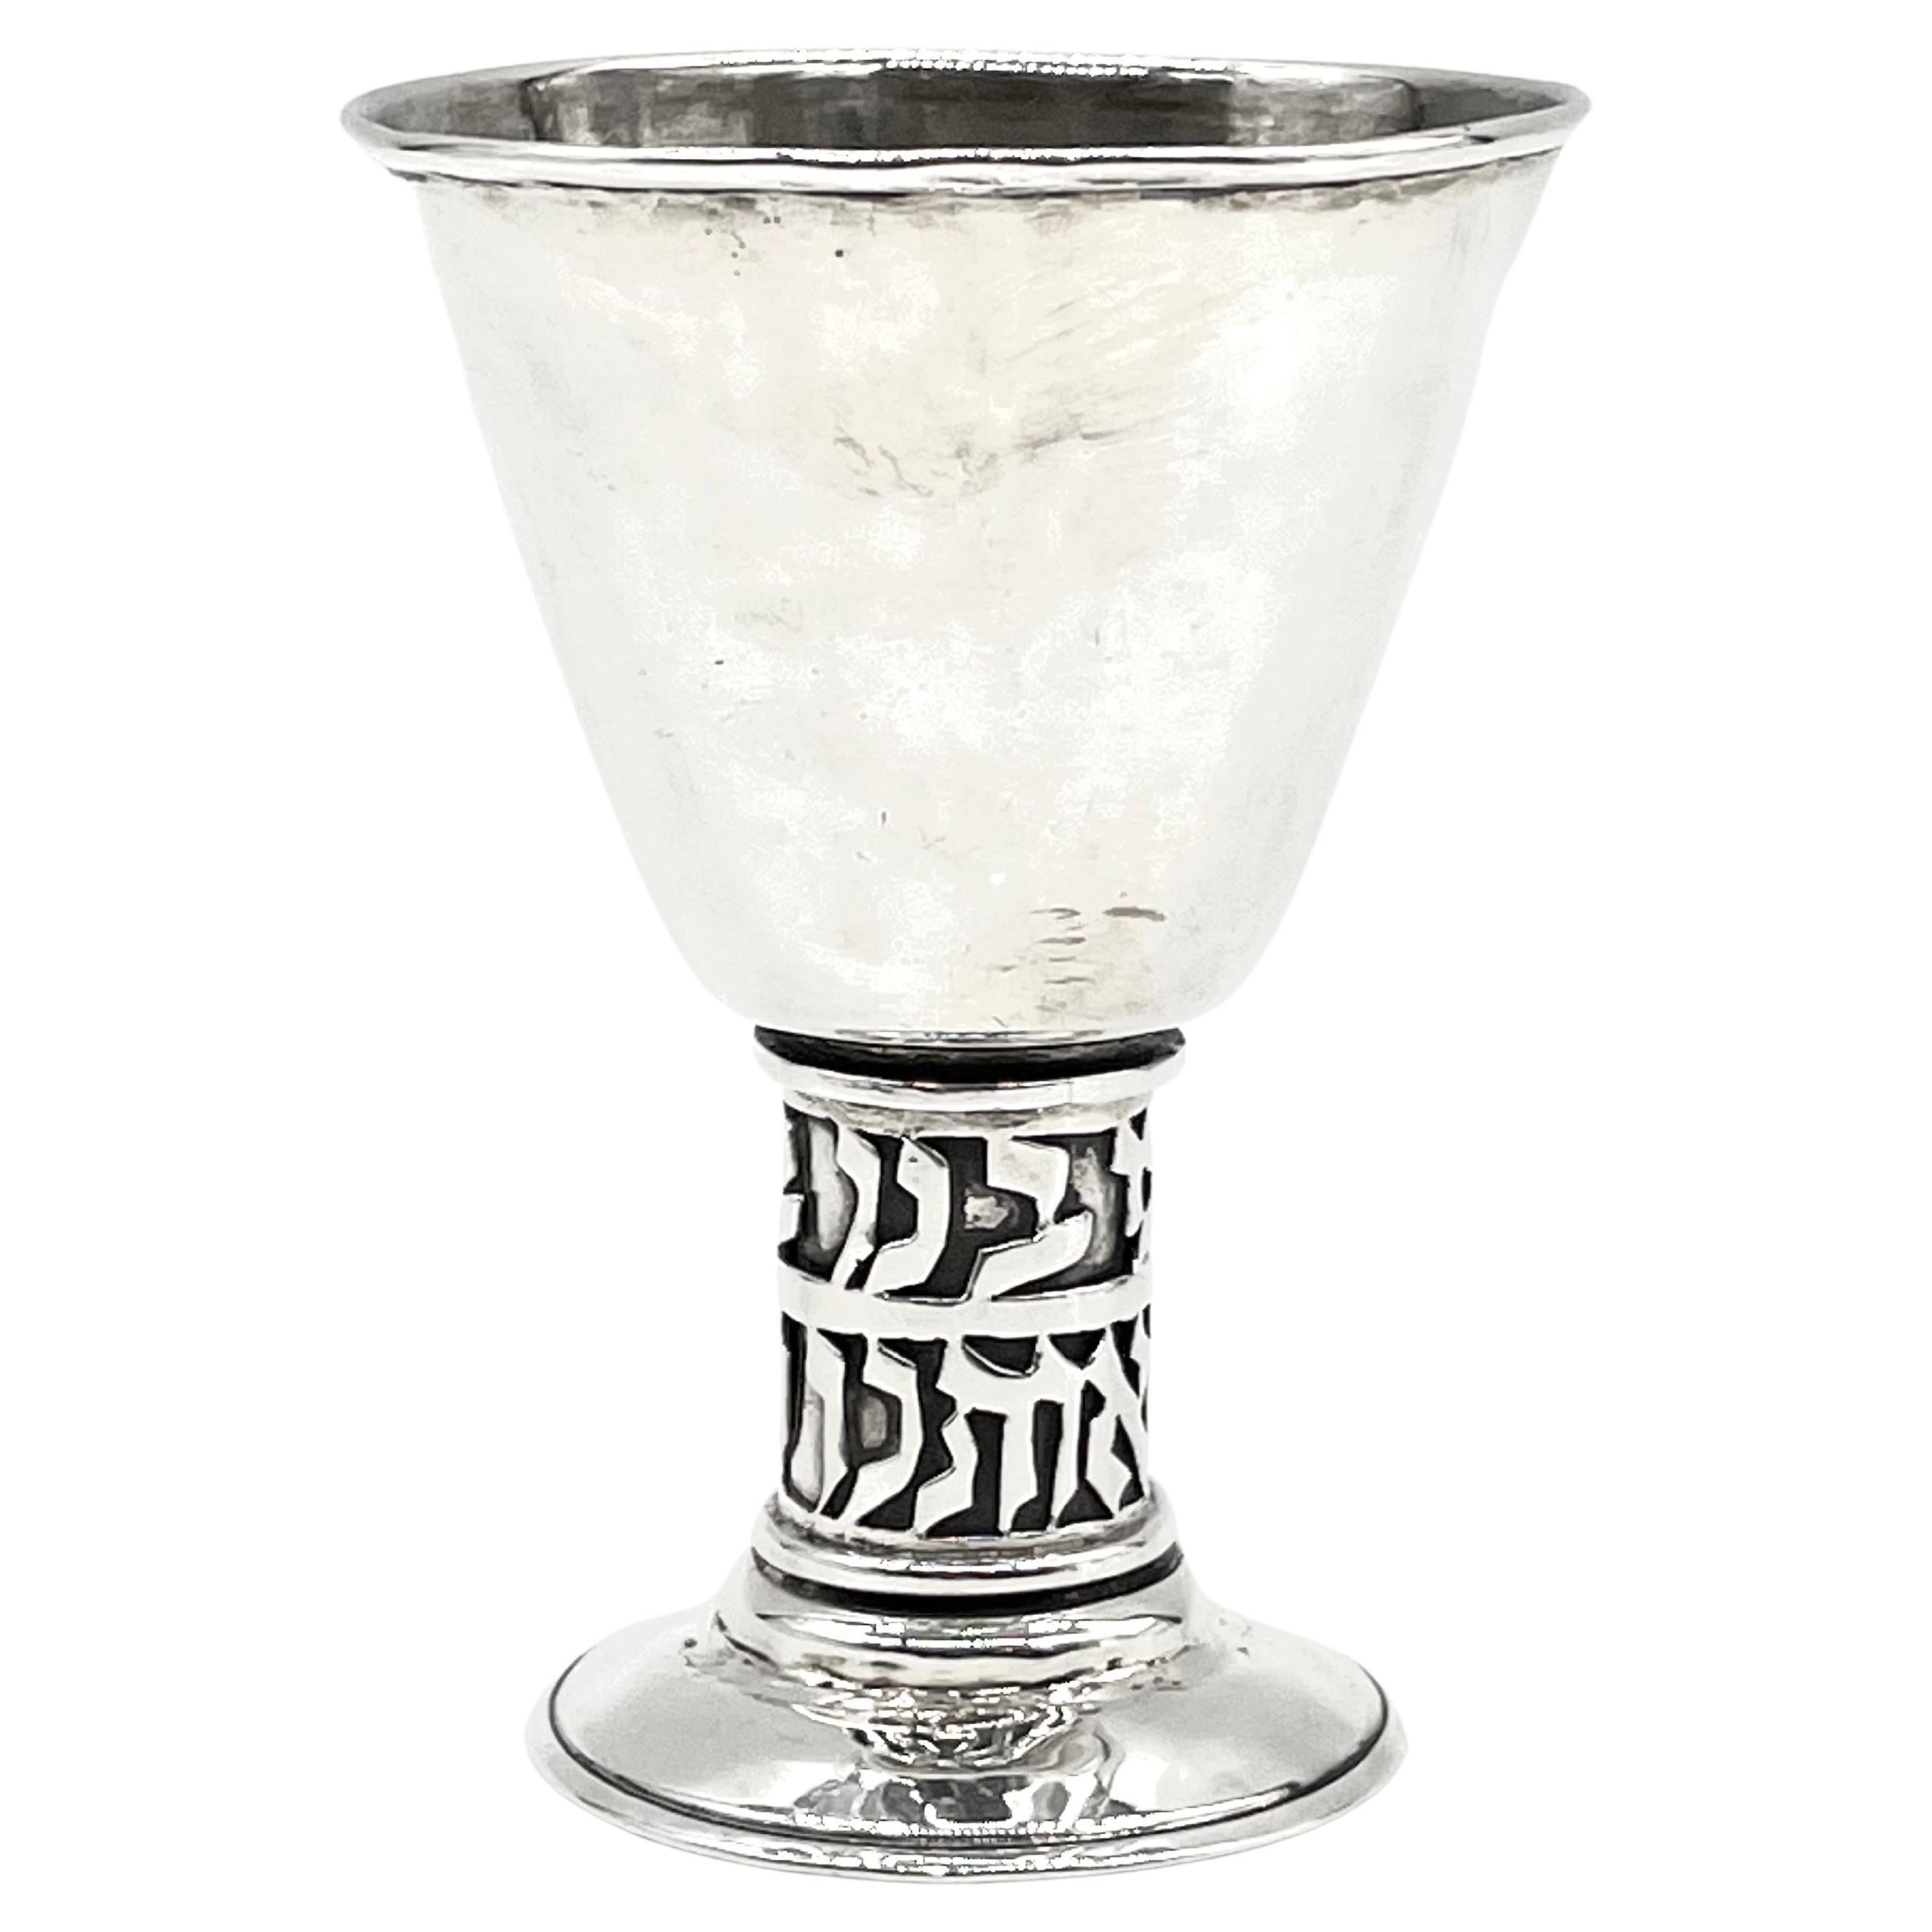 Mid-20th Century Israeli Silver Kiddush Goblet by Hans Ettlinger